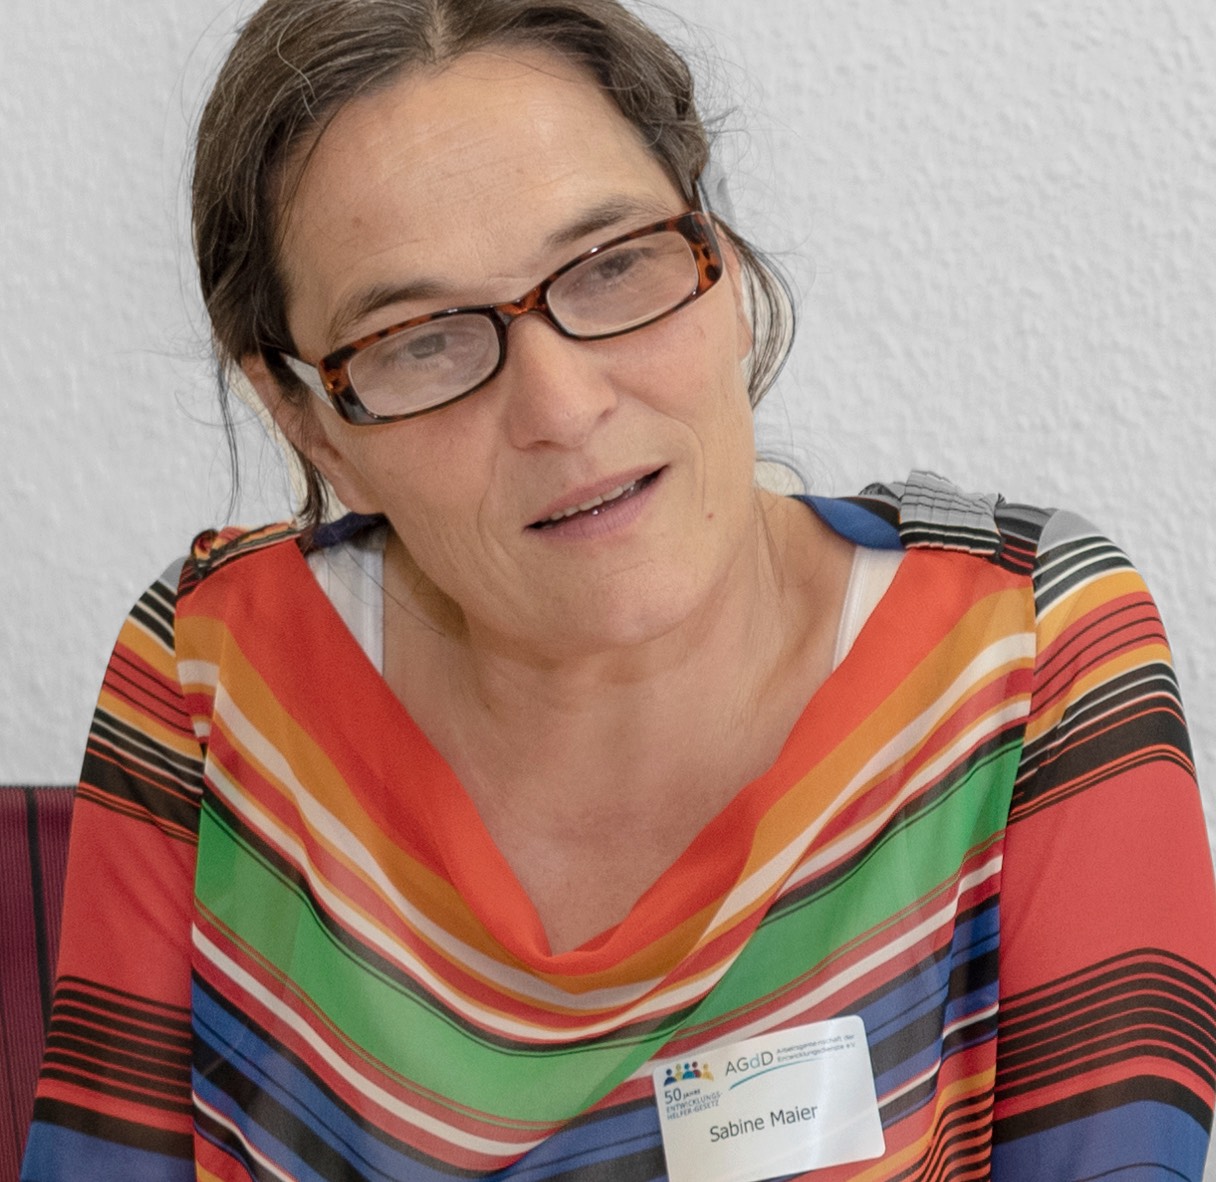 Sabine Maier, ProfilPASS-Beraterin aus Bonn (Copyright Zumbusch)